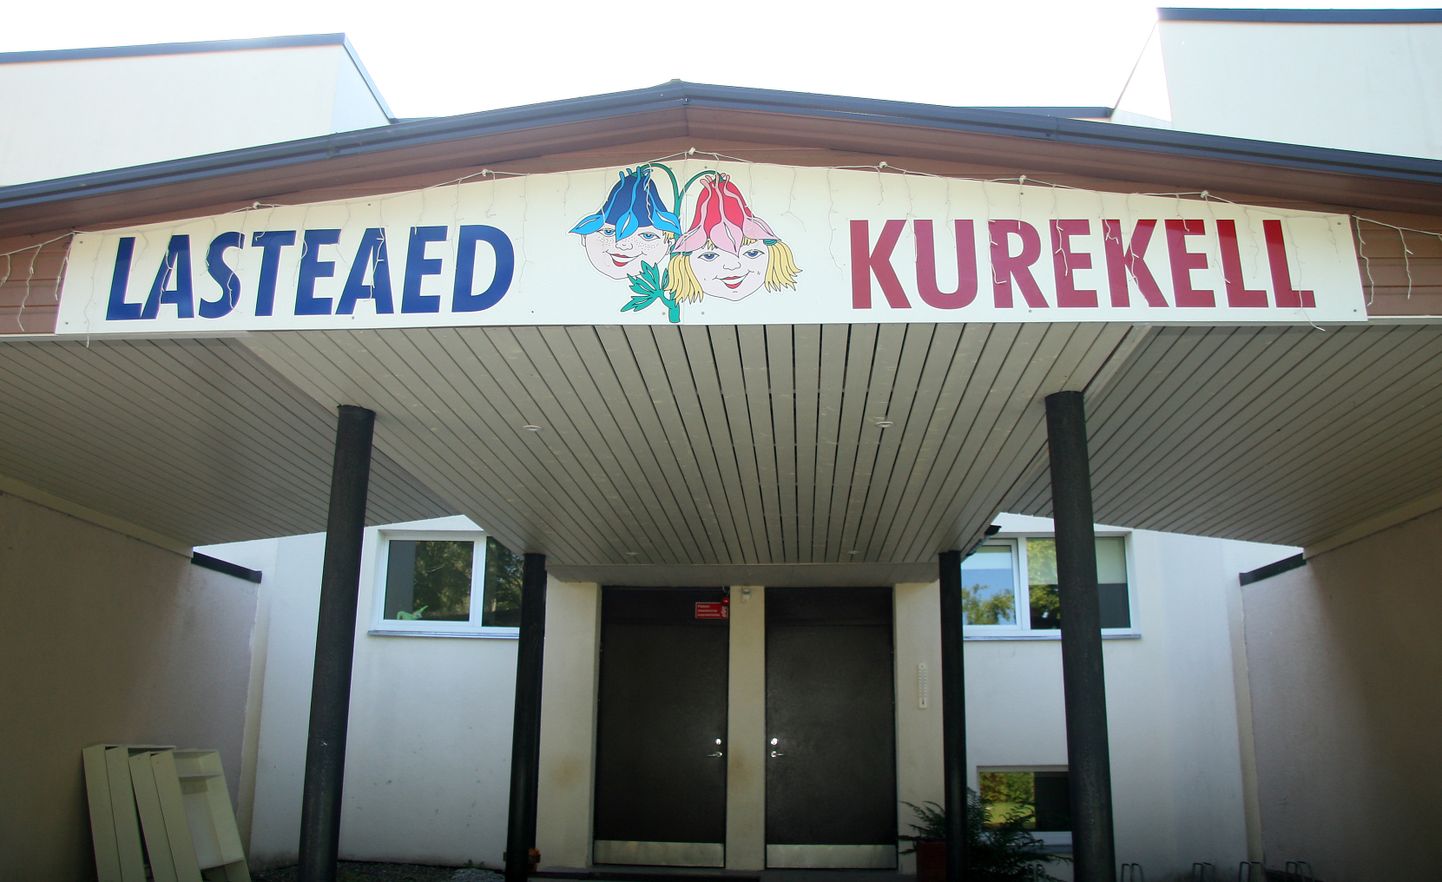 Ийзакуский детский сад "Kurekell".